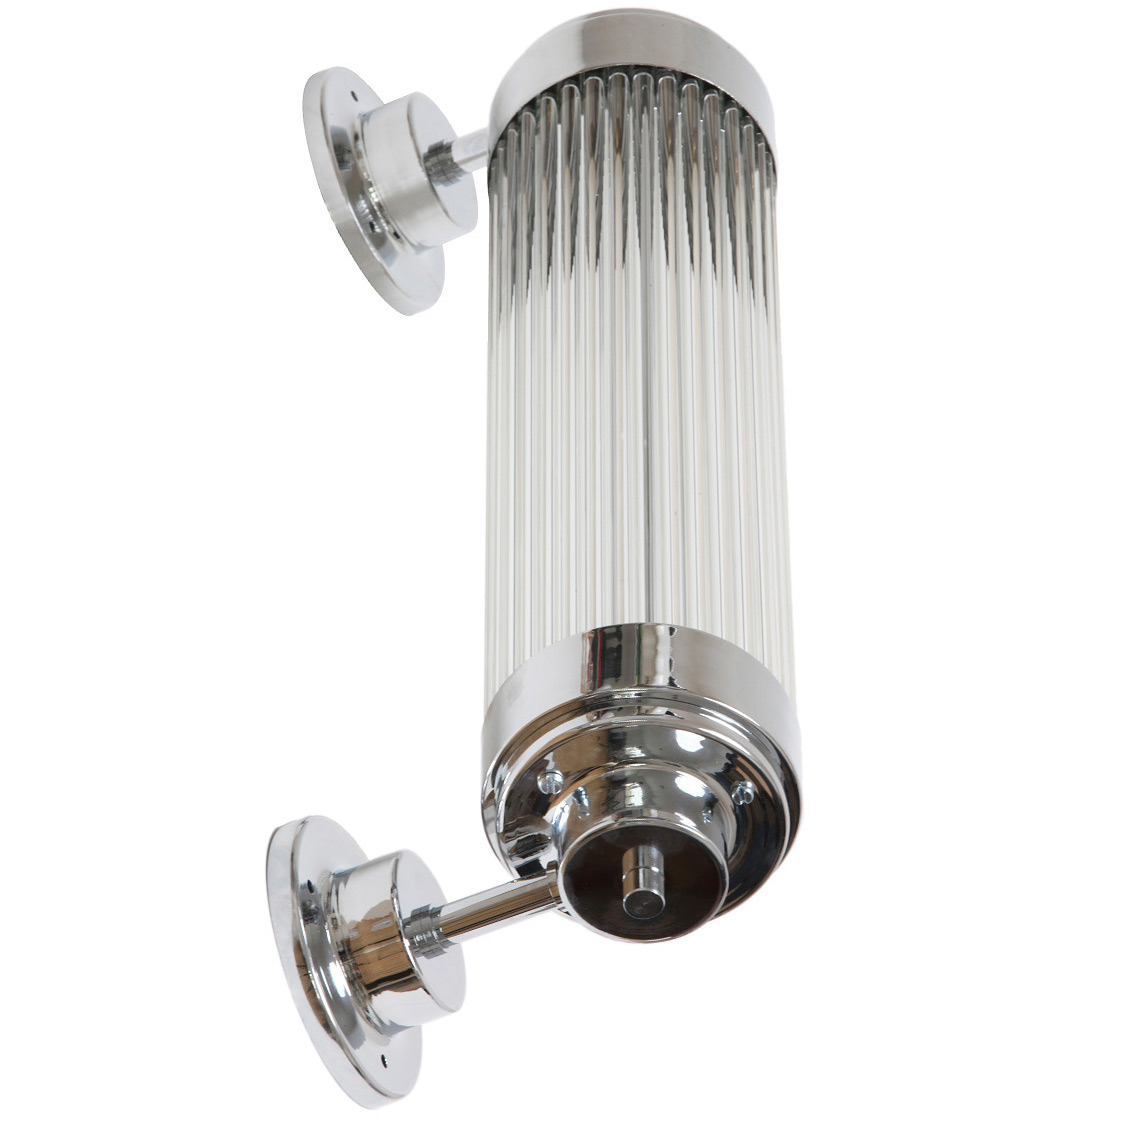 Exklusive LED-Wandleuchte, ideal für Badezimmer-Spiegel: Exklusive Art déco-Leuchte, ideal für den Badezimmer-Spiegel